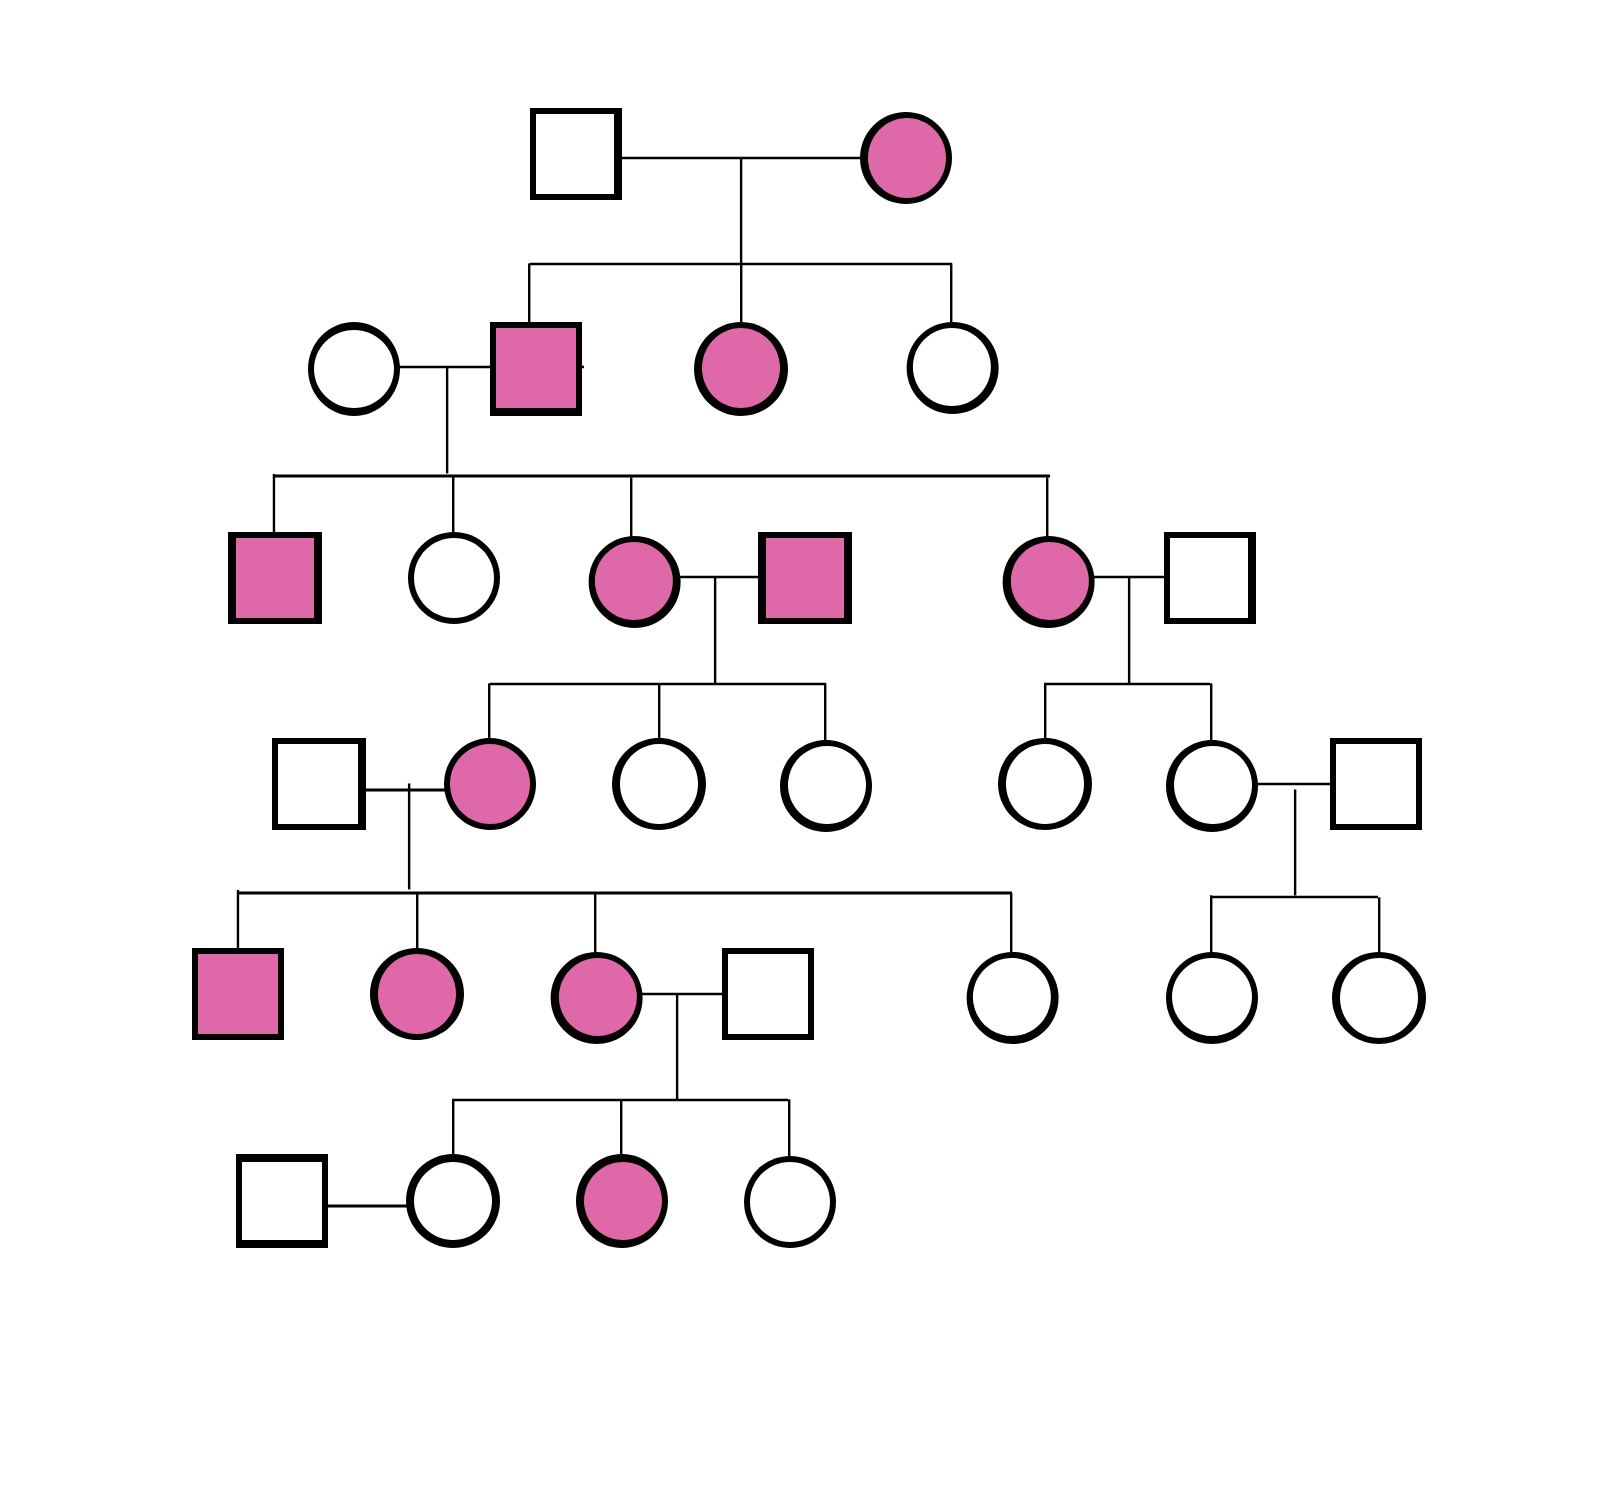 diagrama que muestra el árbol genealógico de tres generaciones